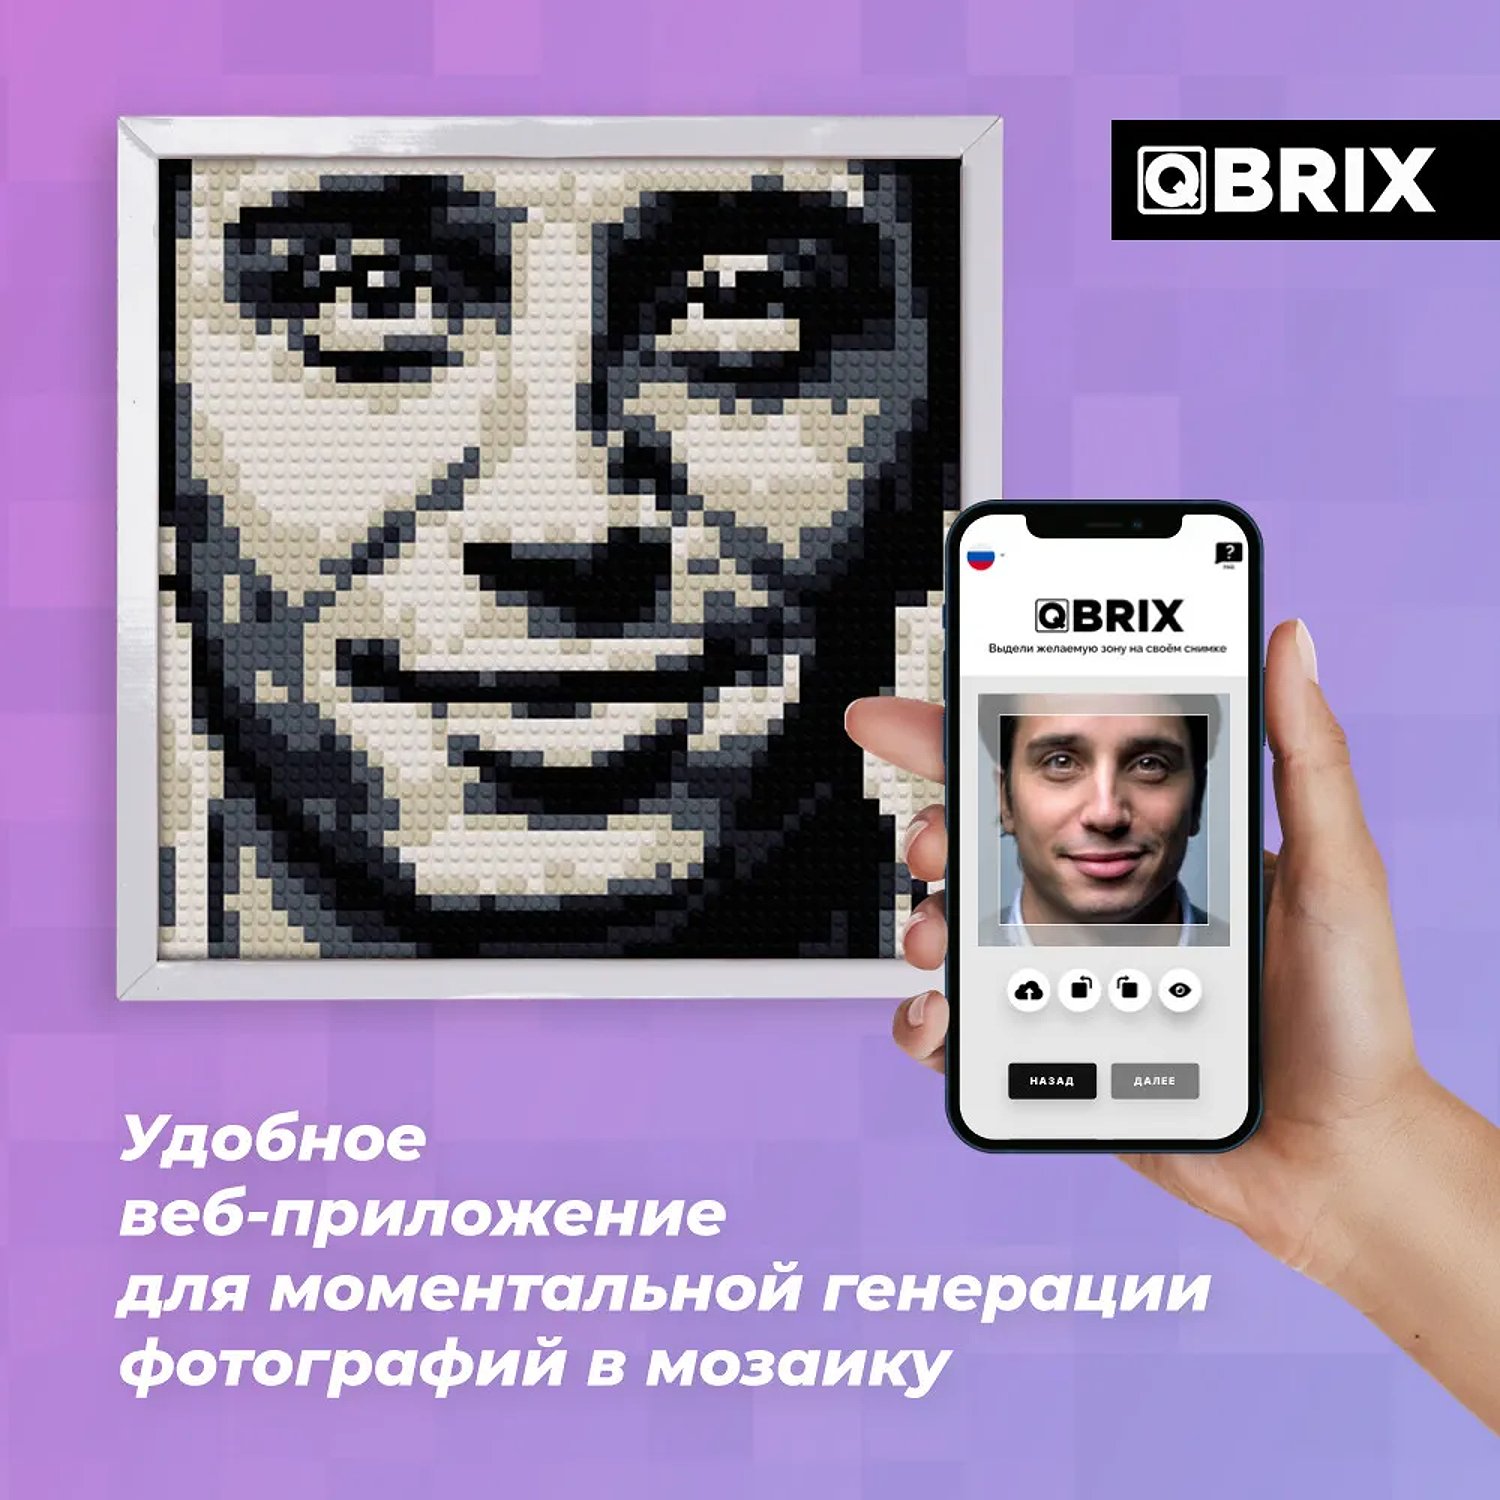 Qbrix poster